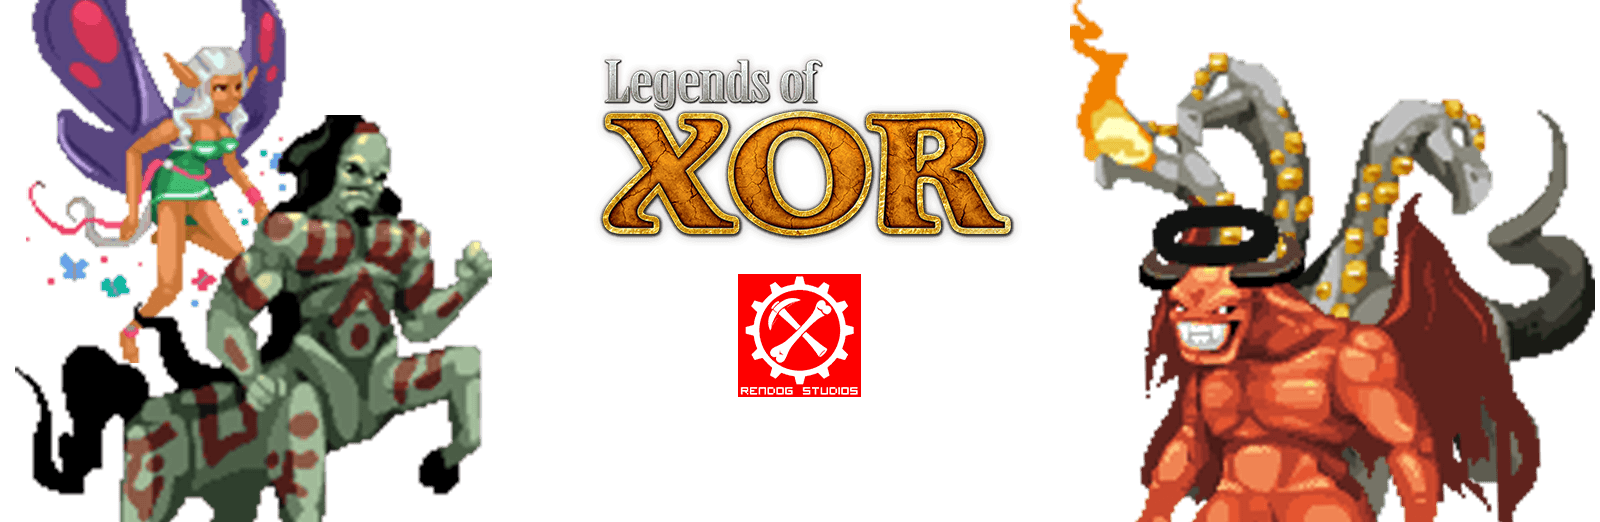 og web games featured legends of xor v2